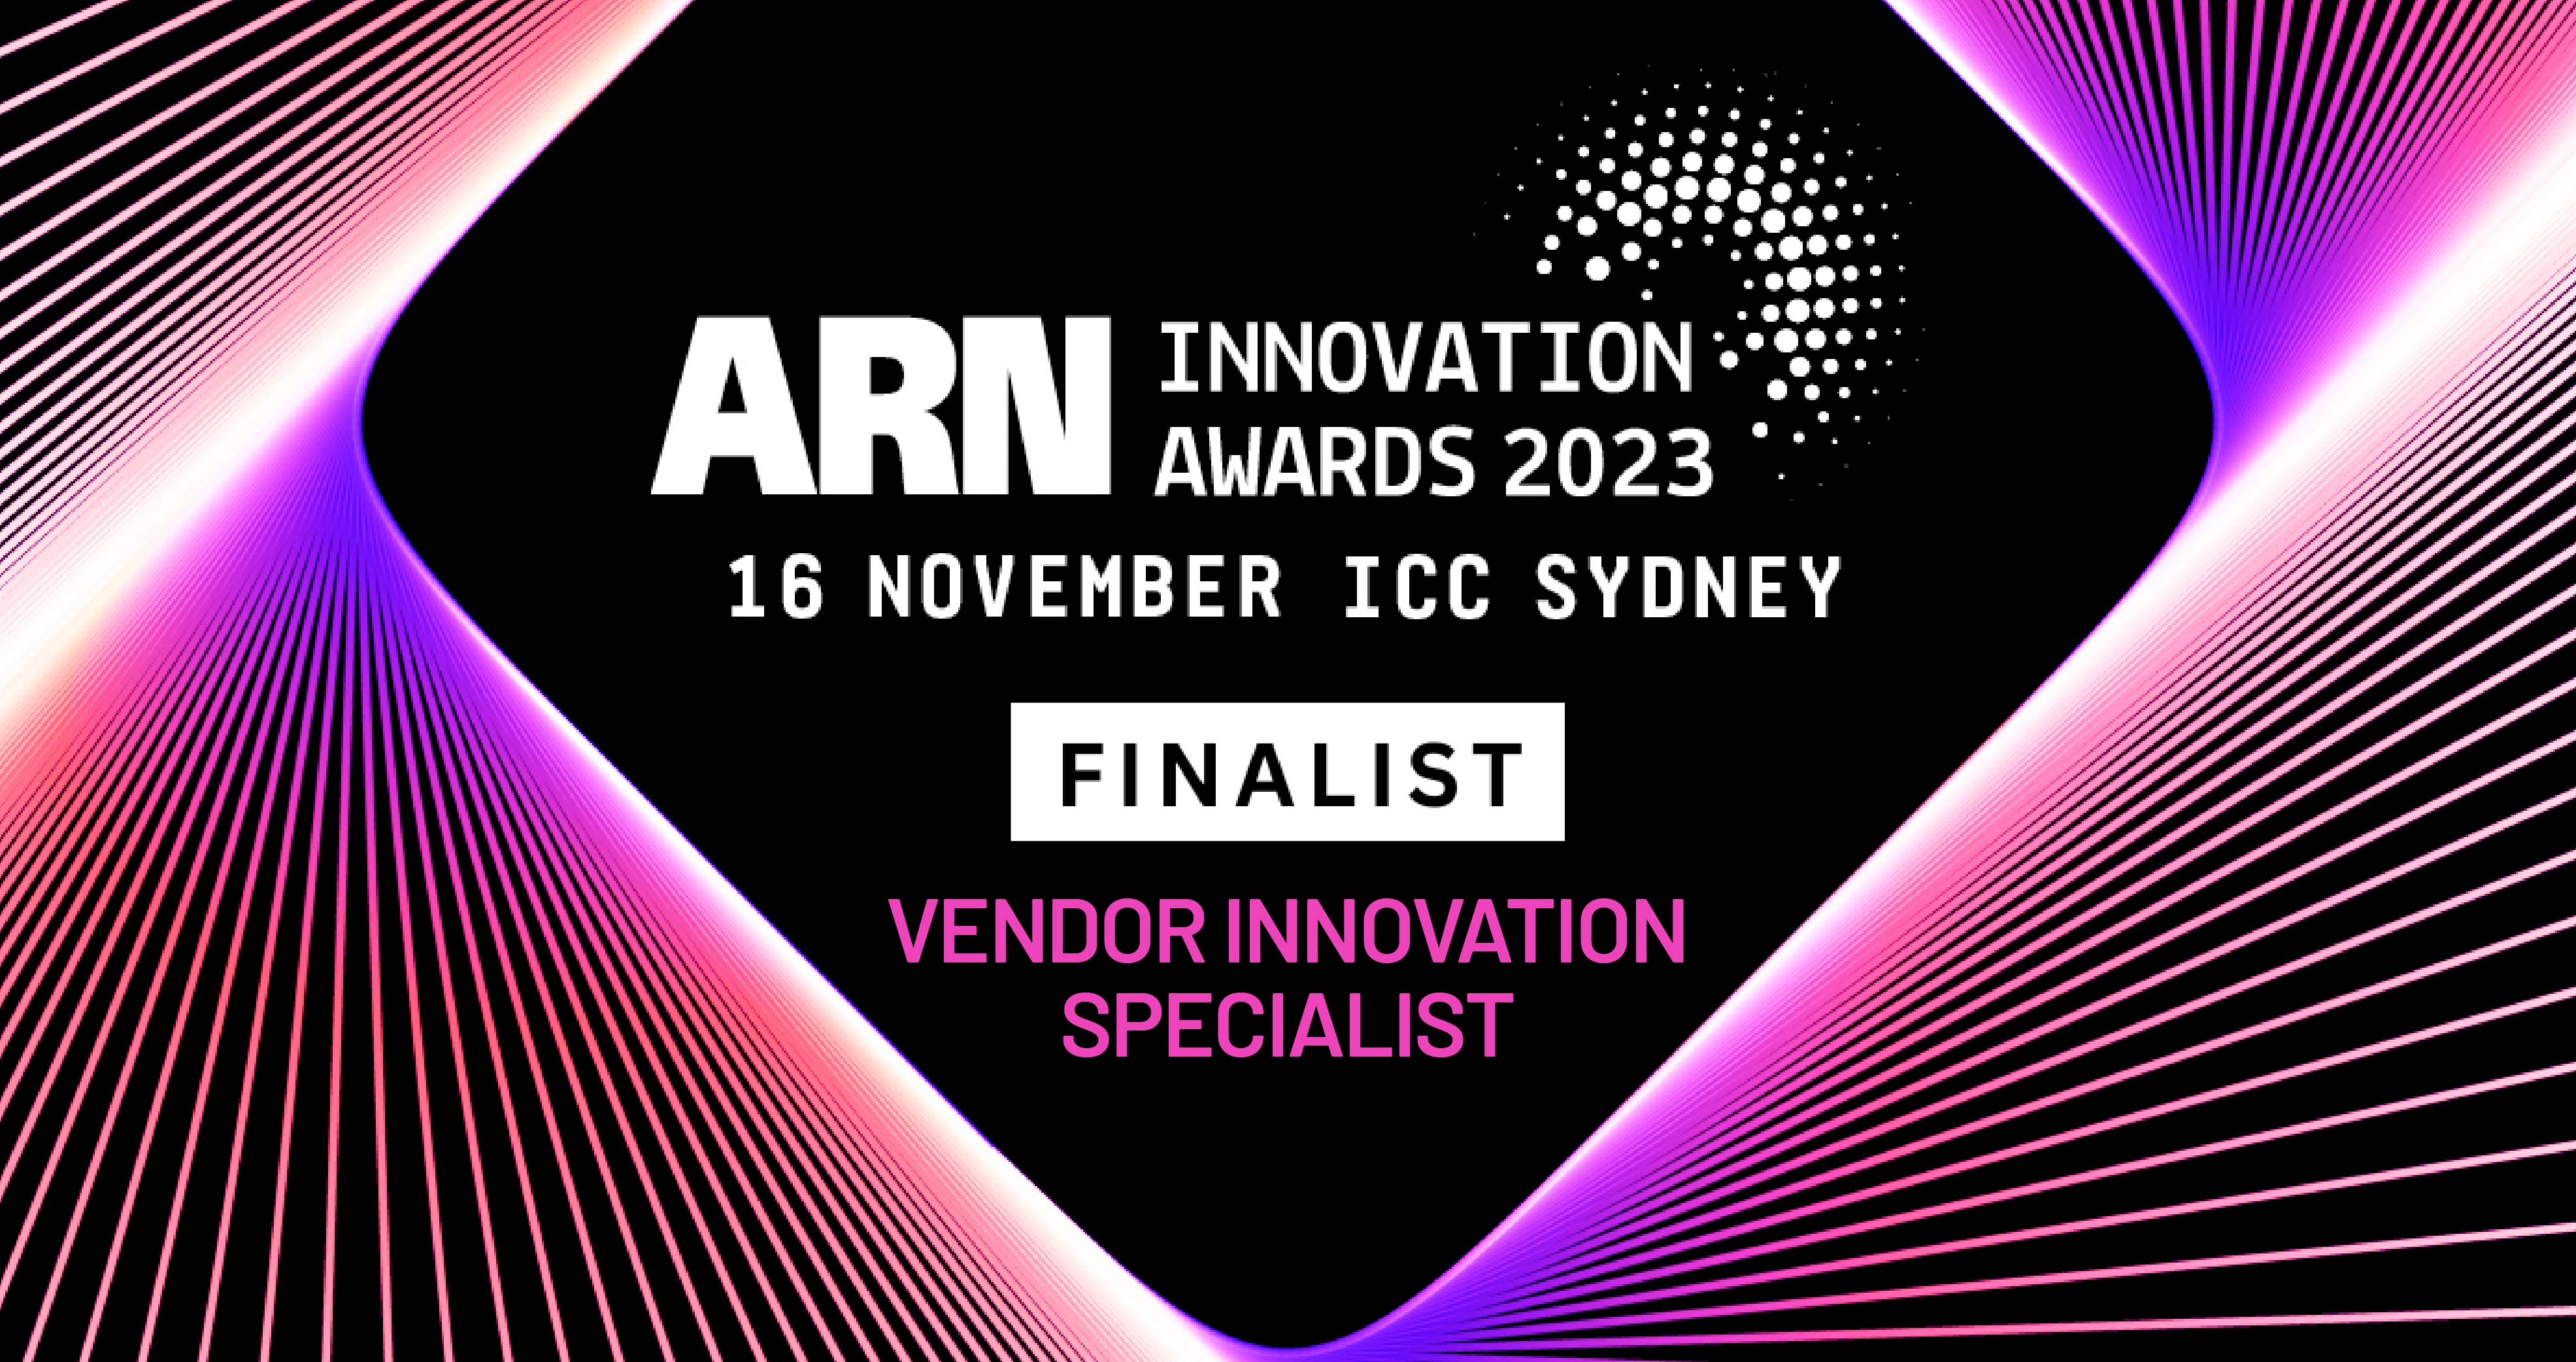 Awards_ARN Innovation Award 2023-2